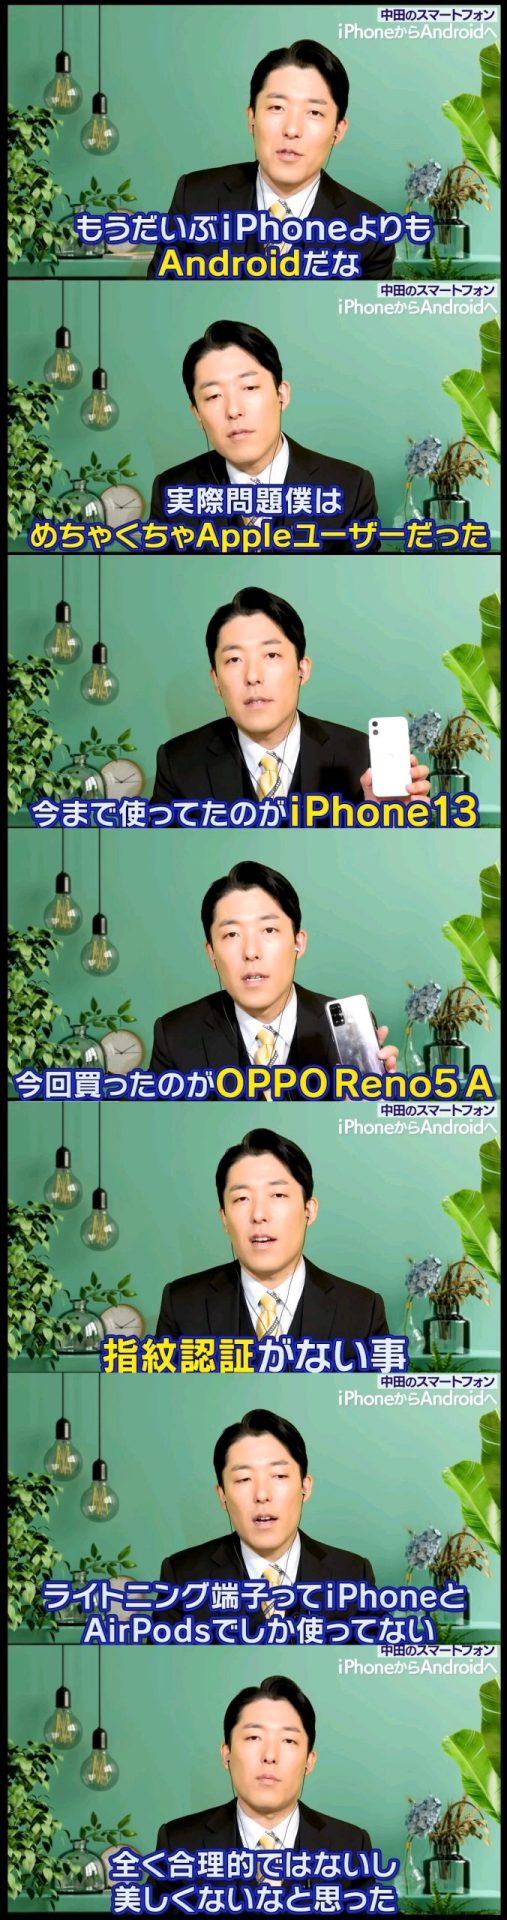 【画 像】中田敦彦、iPhoneからAndroidに乗り換える。指紋認証とLightningの件で不満な模様